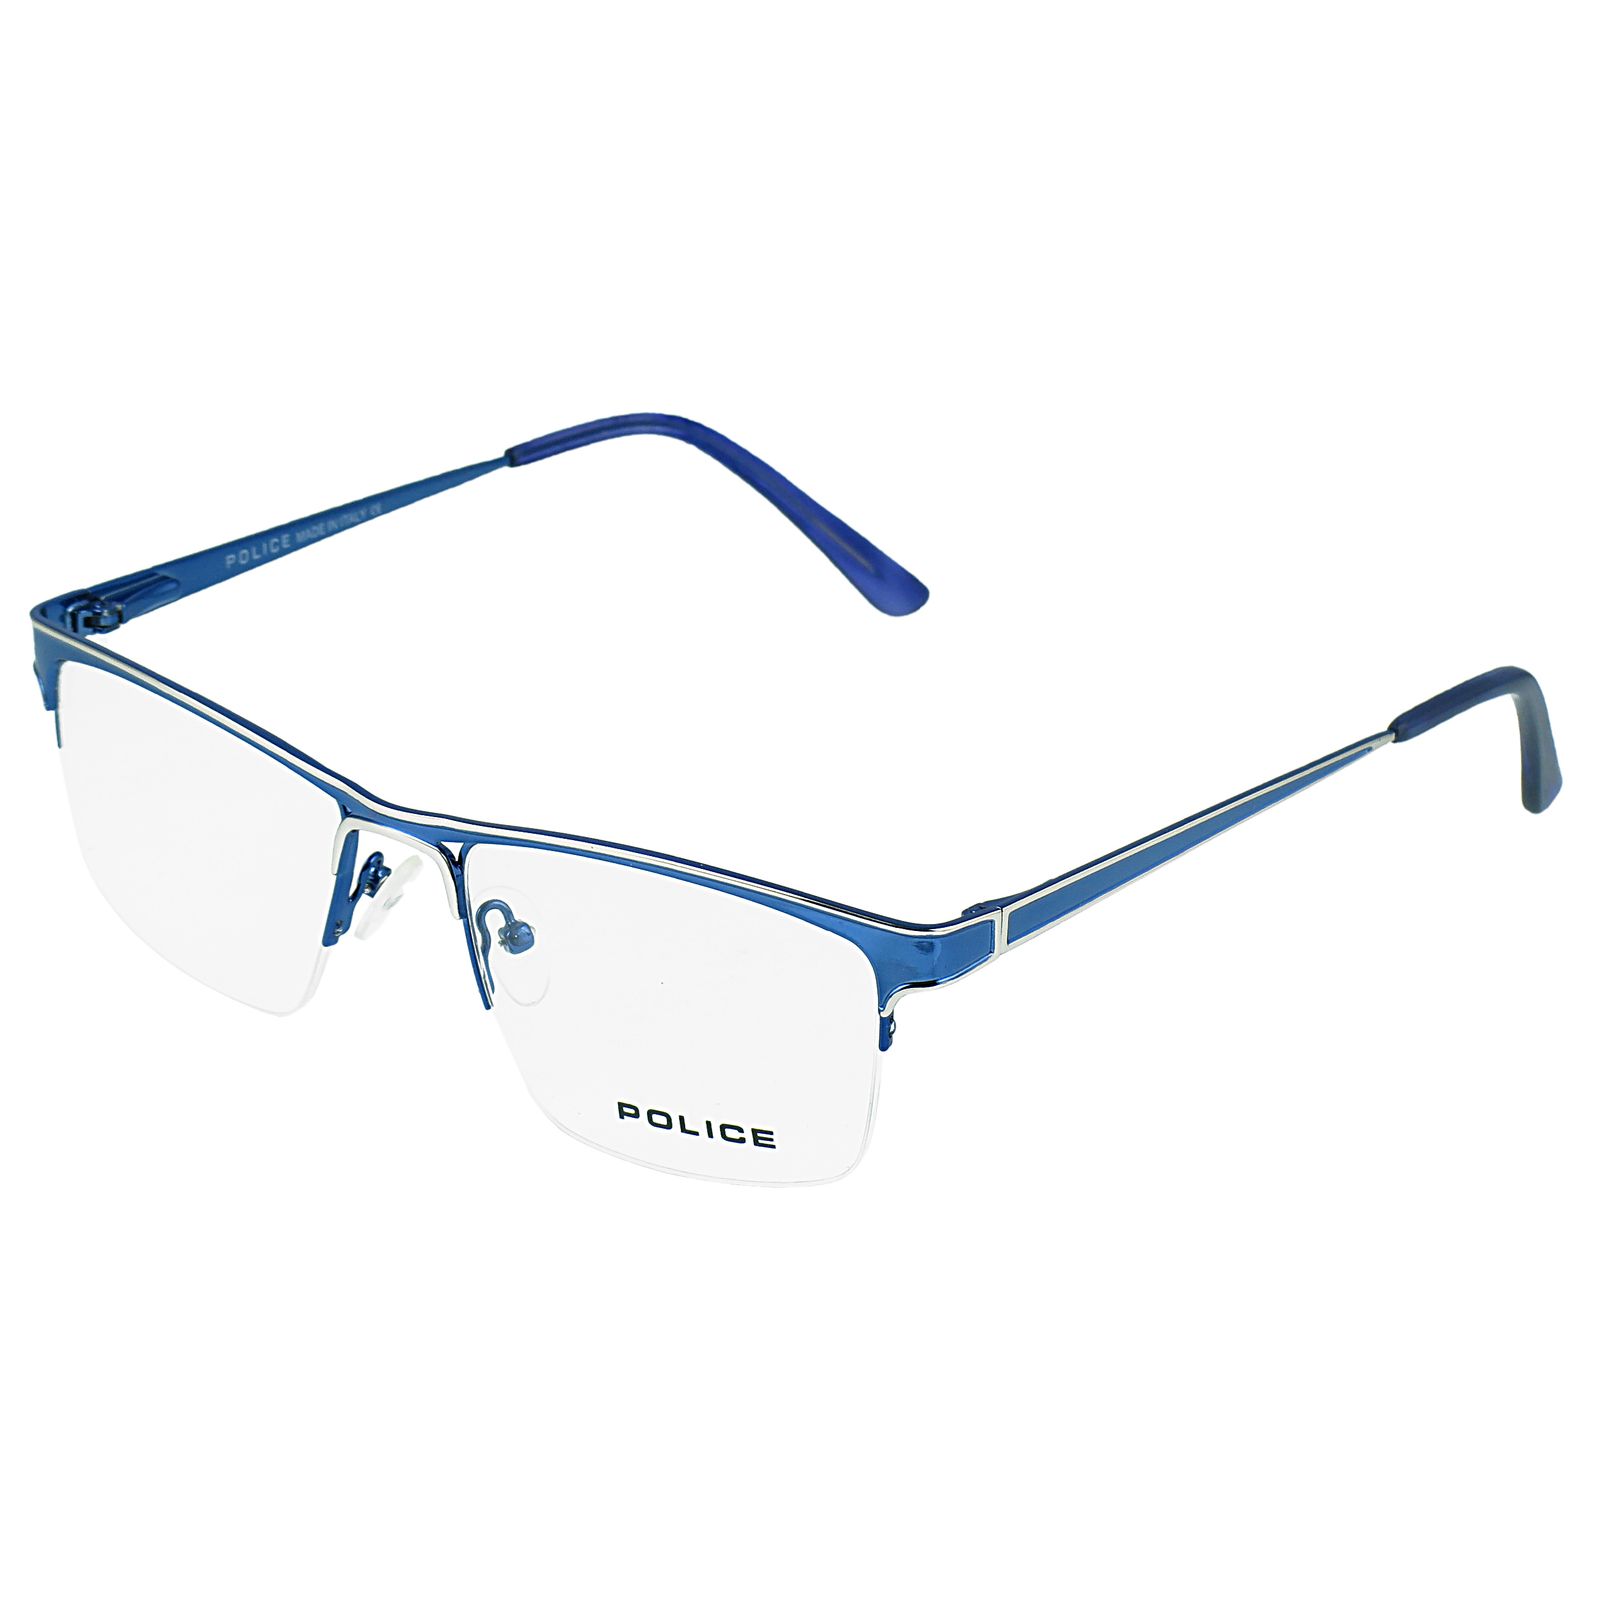 فریم عینک طبی پلیس مدل 8861 -  - 2